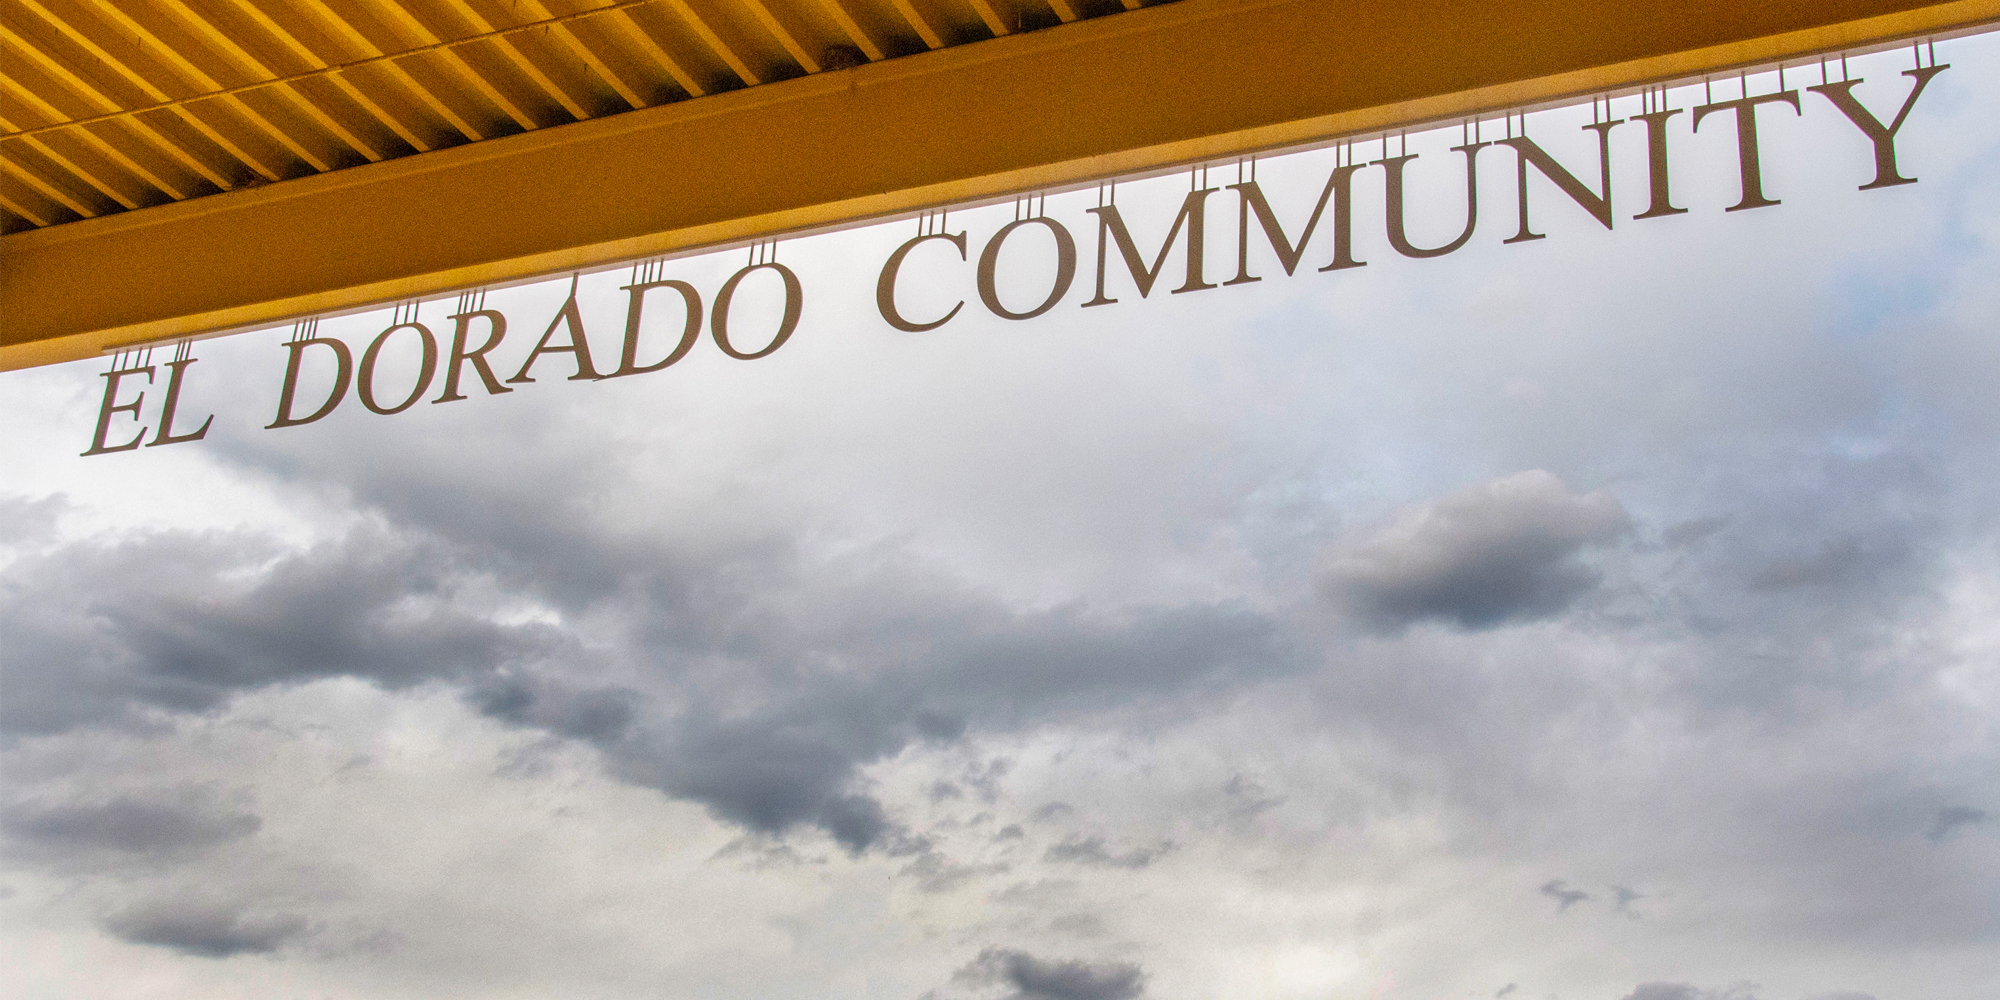 El Dorado Community School Sign